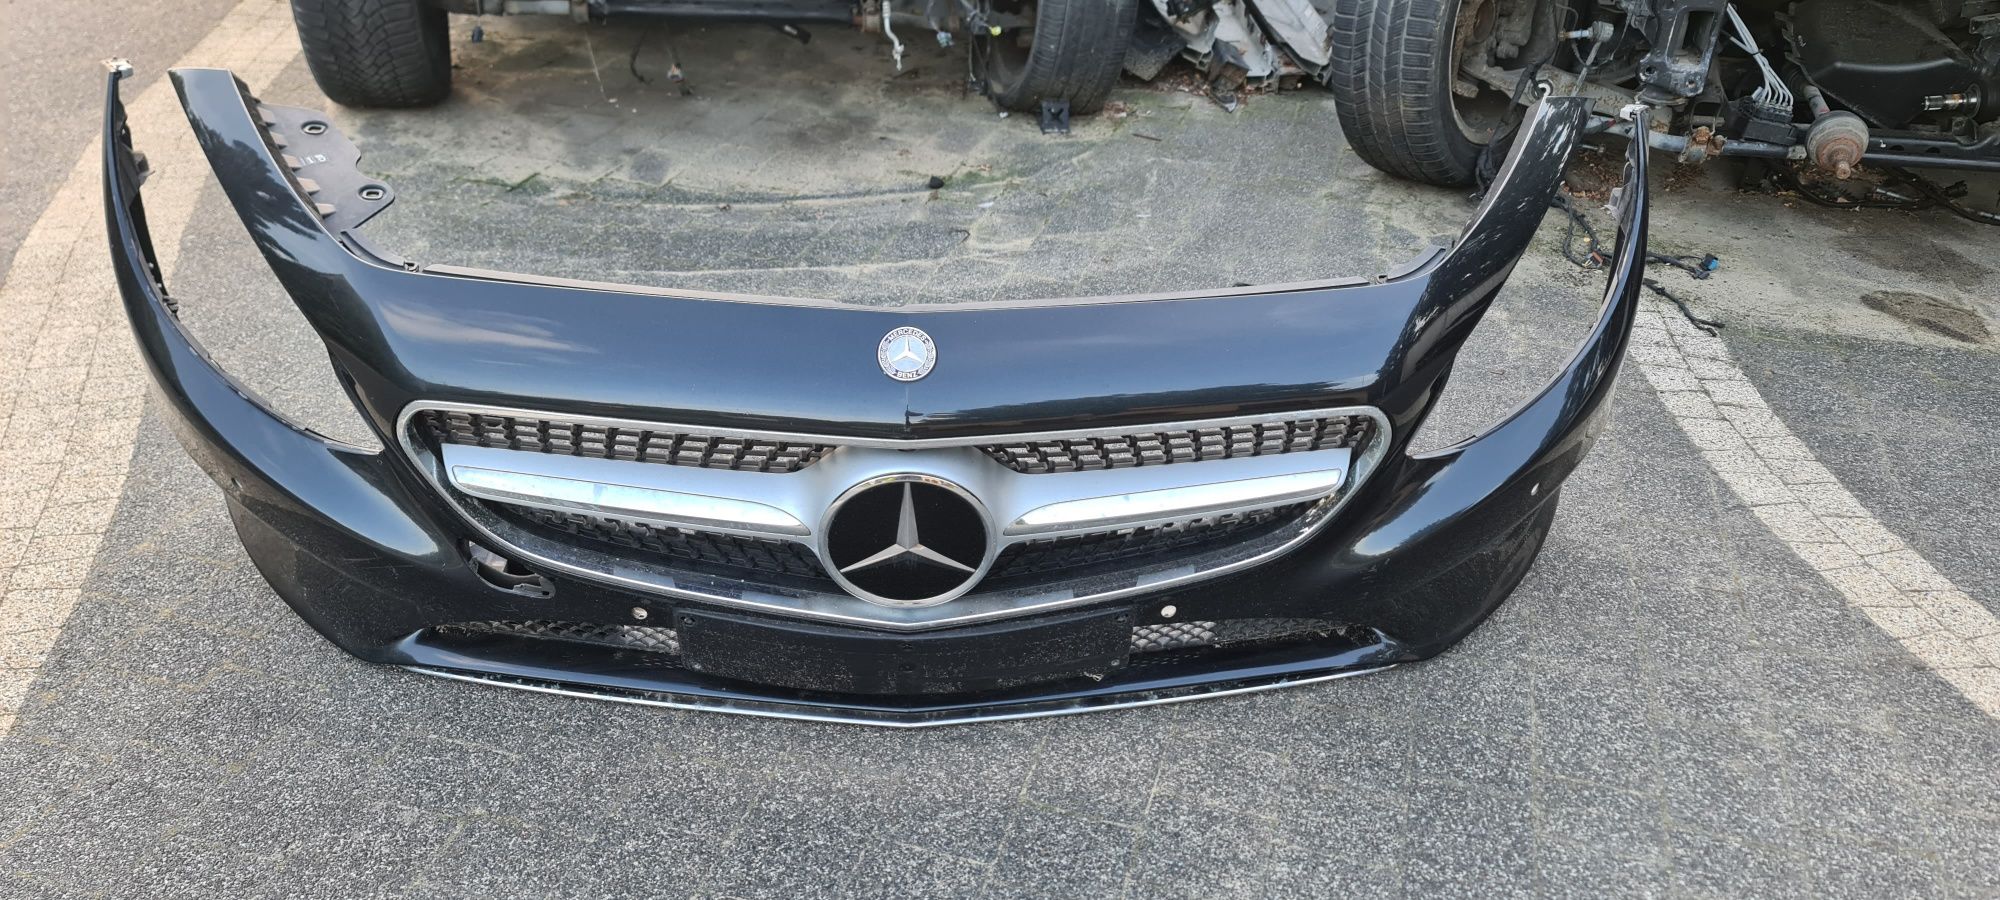 Zderzak Przedni Przód Mercedes W217 S klasa Coupe Cabrio KPL.